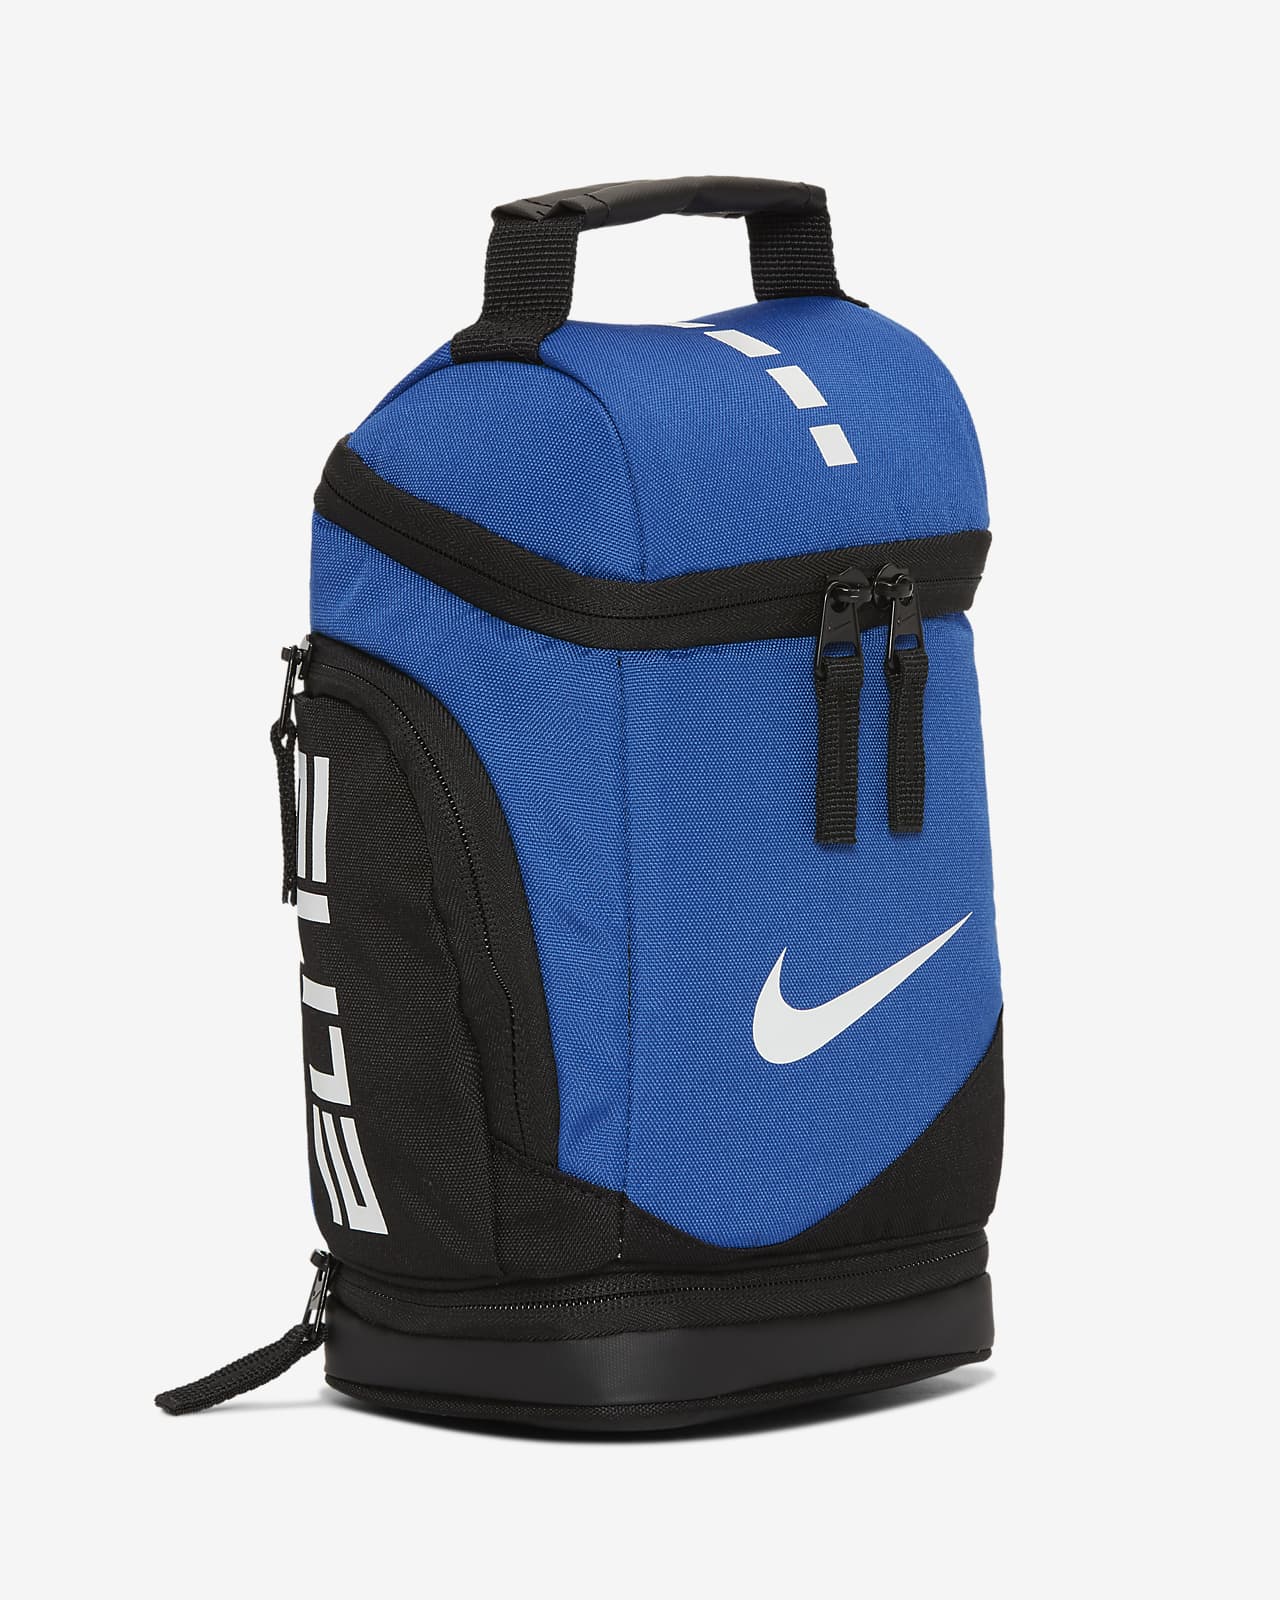 Zeeanemoon Nauwgezet Amerikaans voetbal Nike Elite Fuel Pack Kids' Lunch Bag. Nike.com